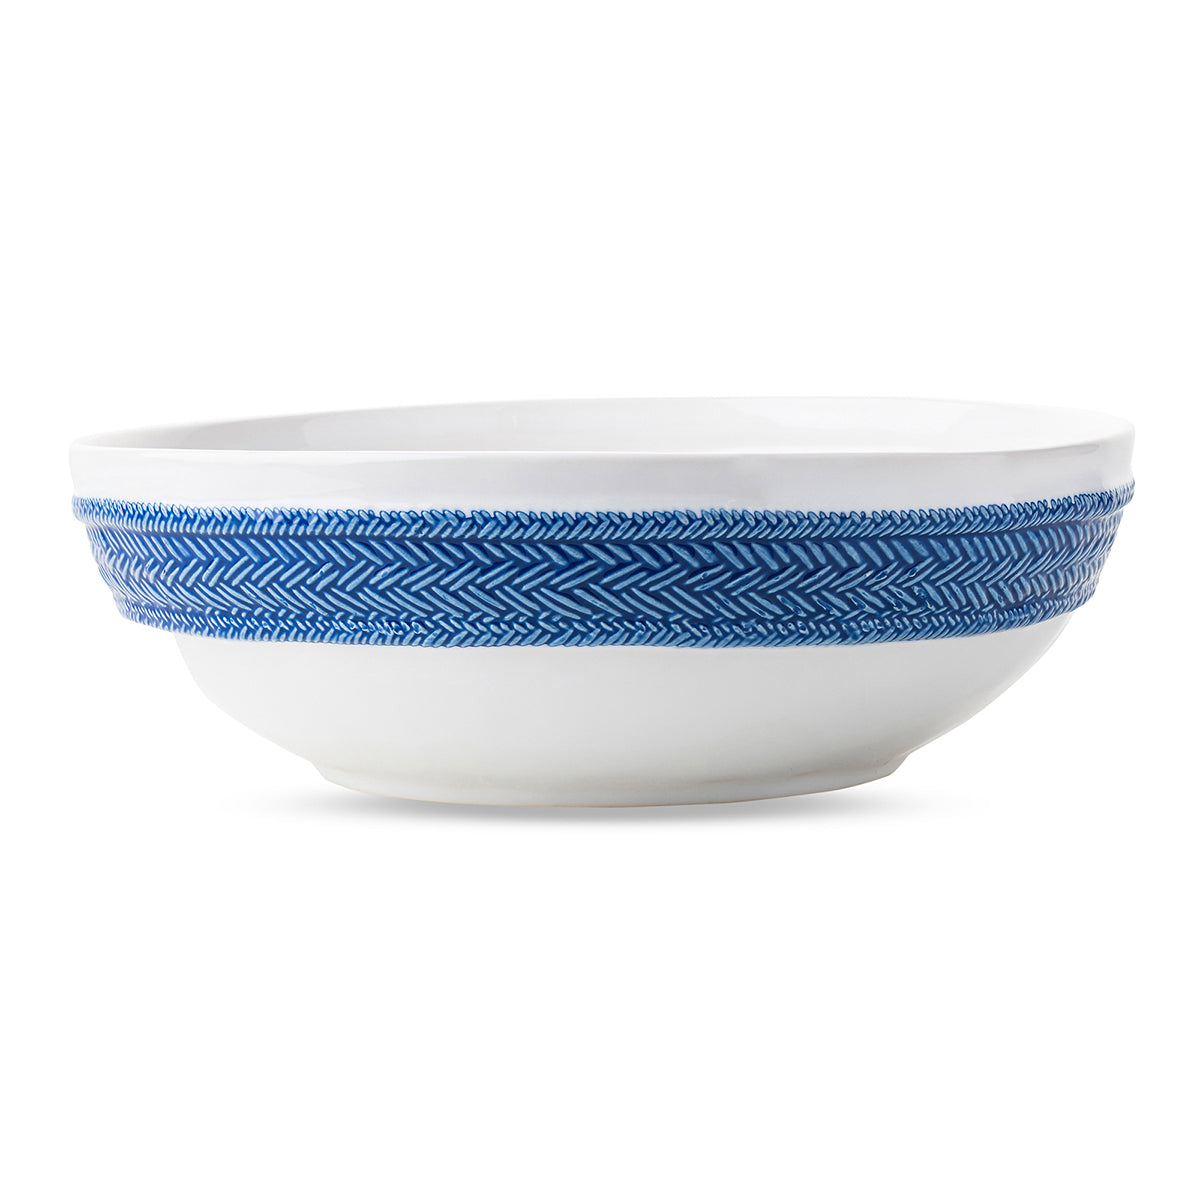 Le Panier 12in Serving Bowl - Delft Blue